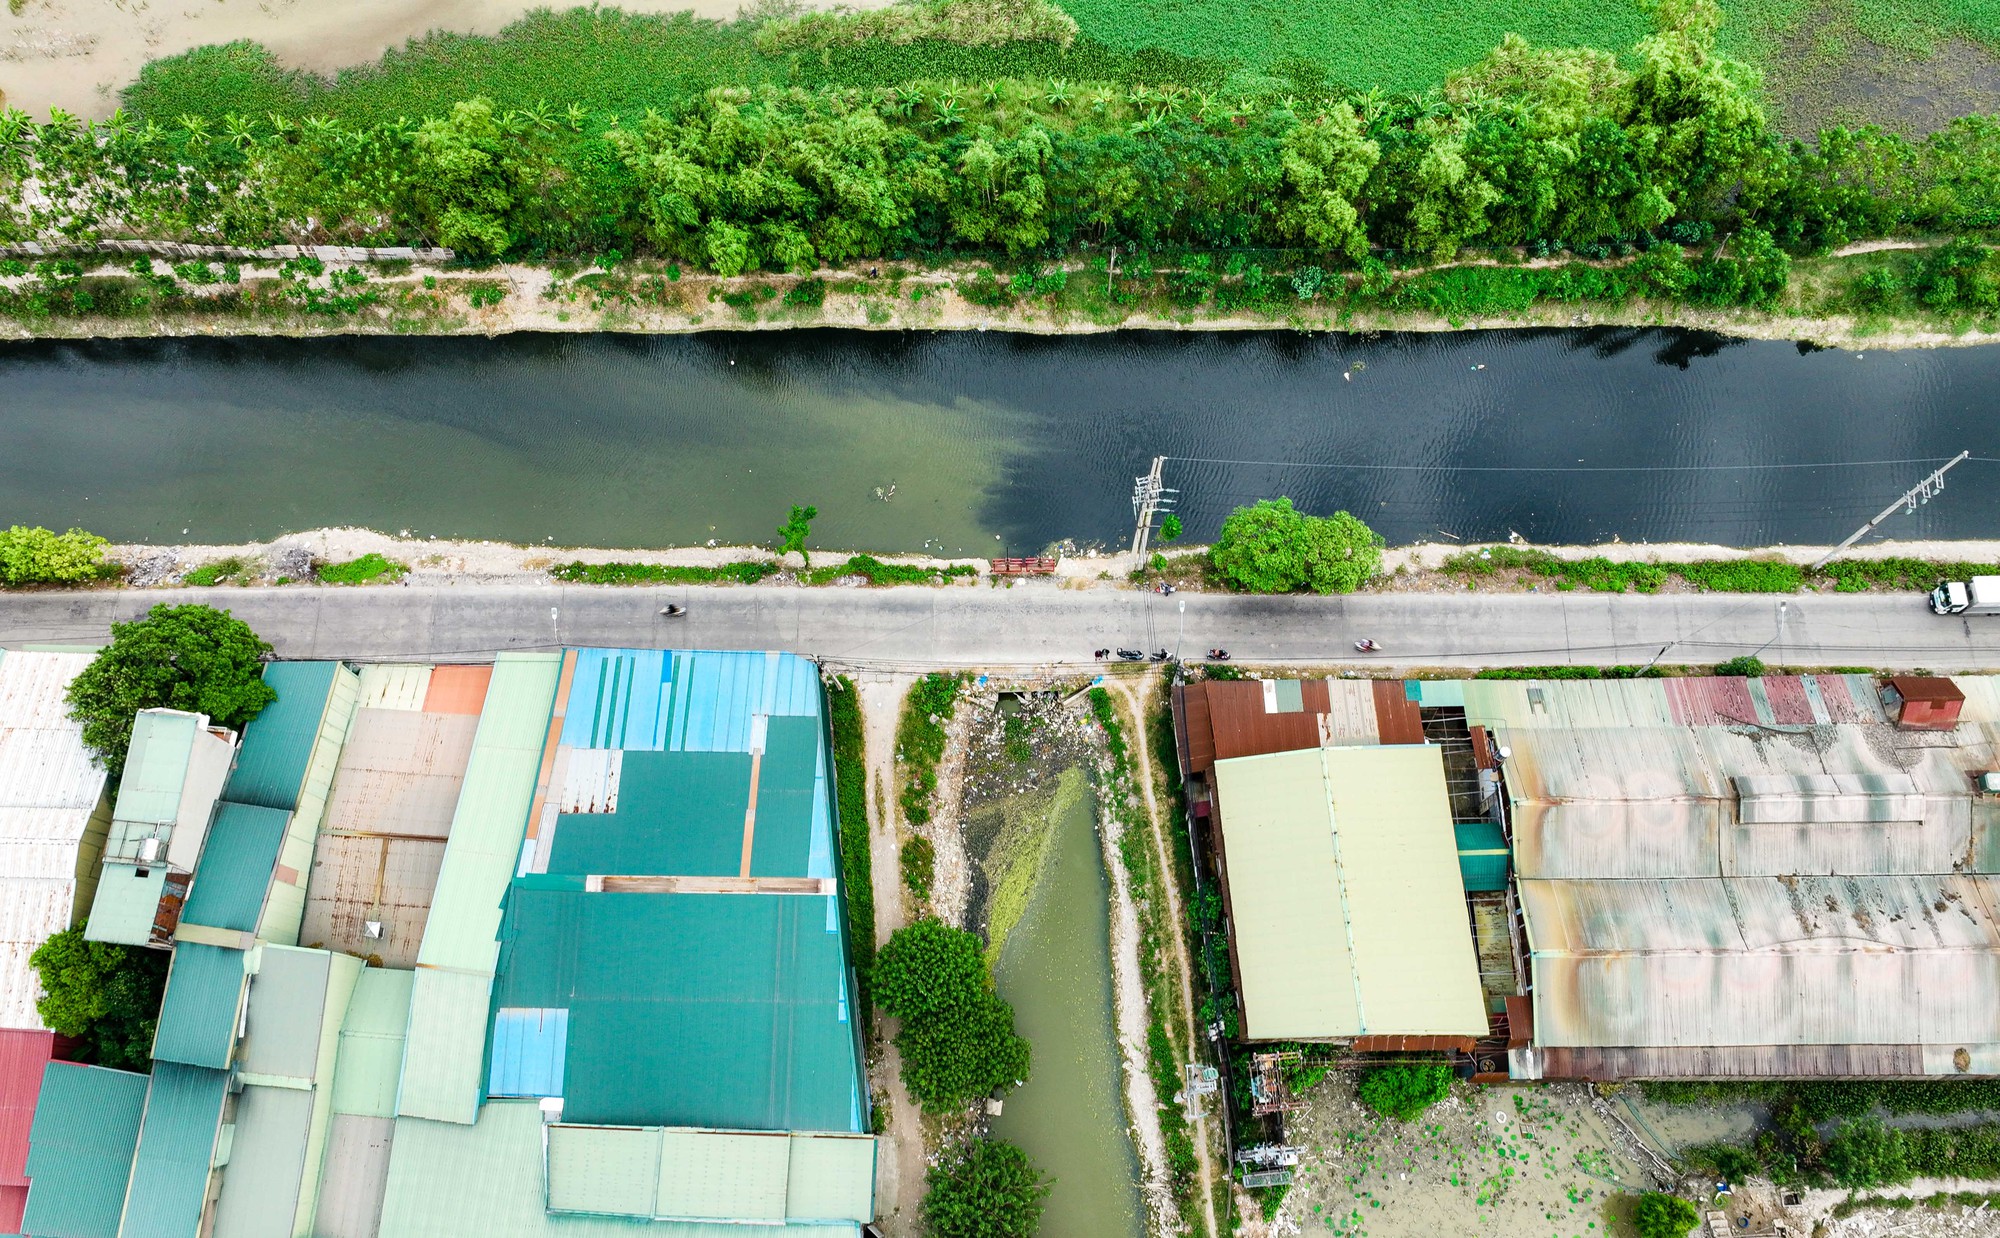 Cận cảnh trạm cấp nước Thanh Hà bị cư dân phàn nàn về chất lượng nước - Ảnh 9.